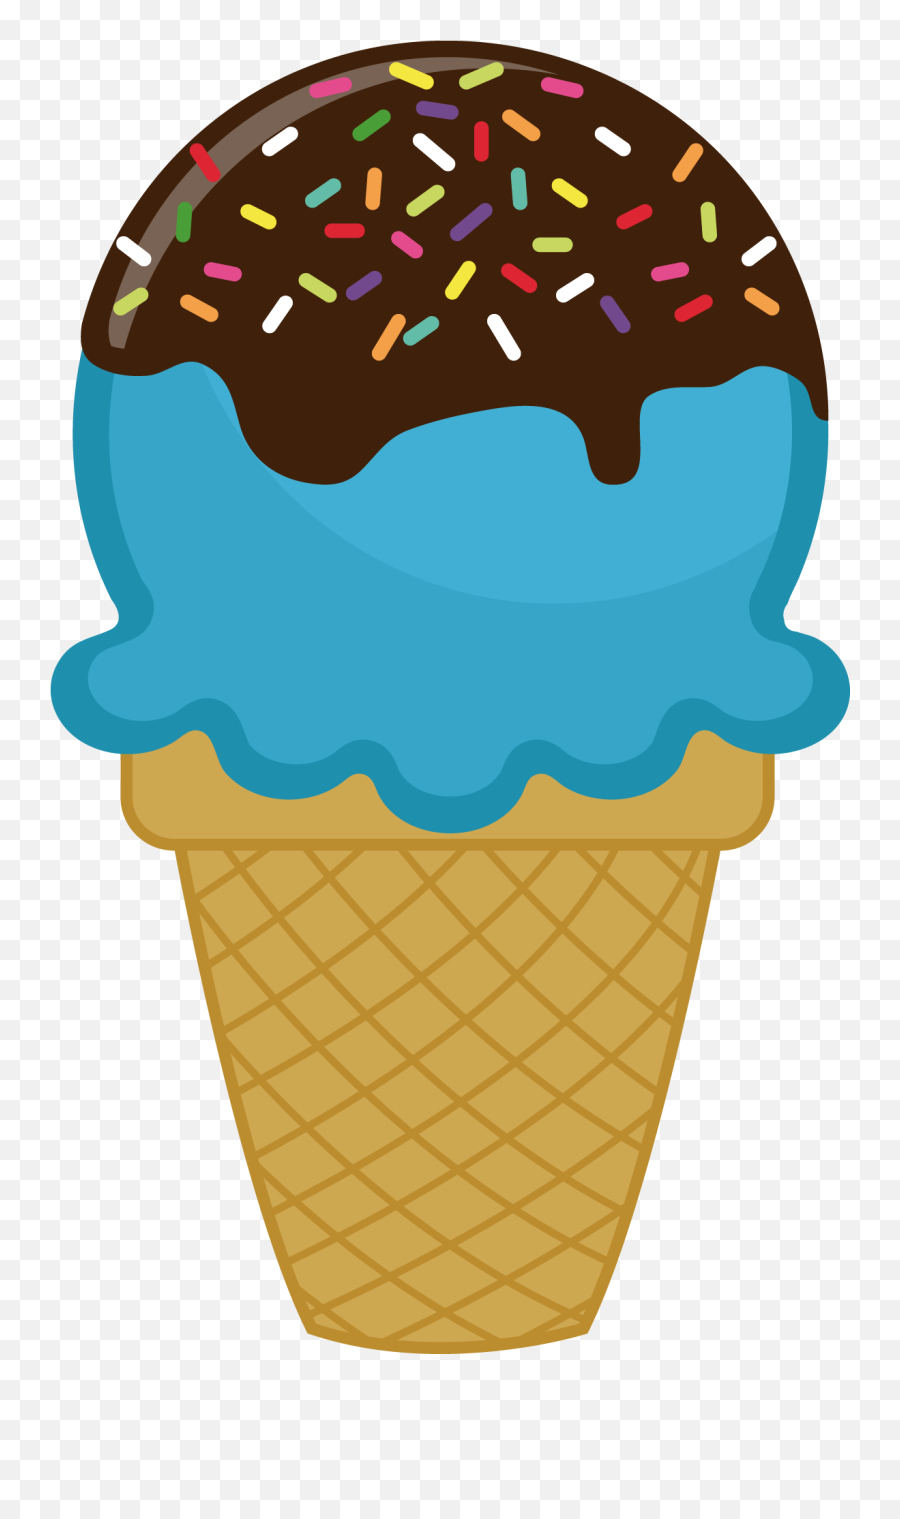 Clipart Food Ice Cream Clipart Food - Ice Cream With Sprinkles Clipart Emoji,Ice Cream Clipart